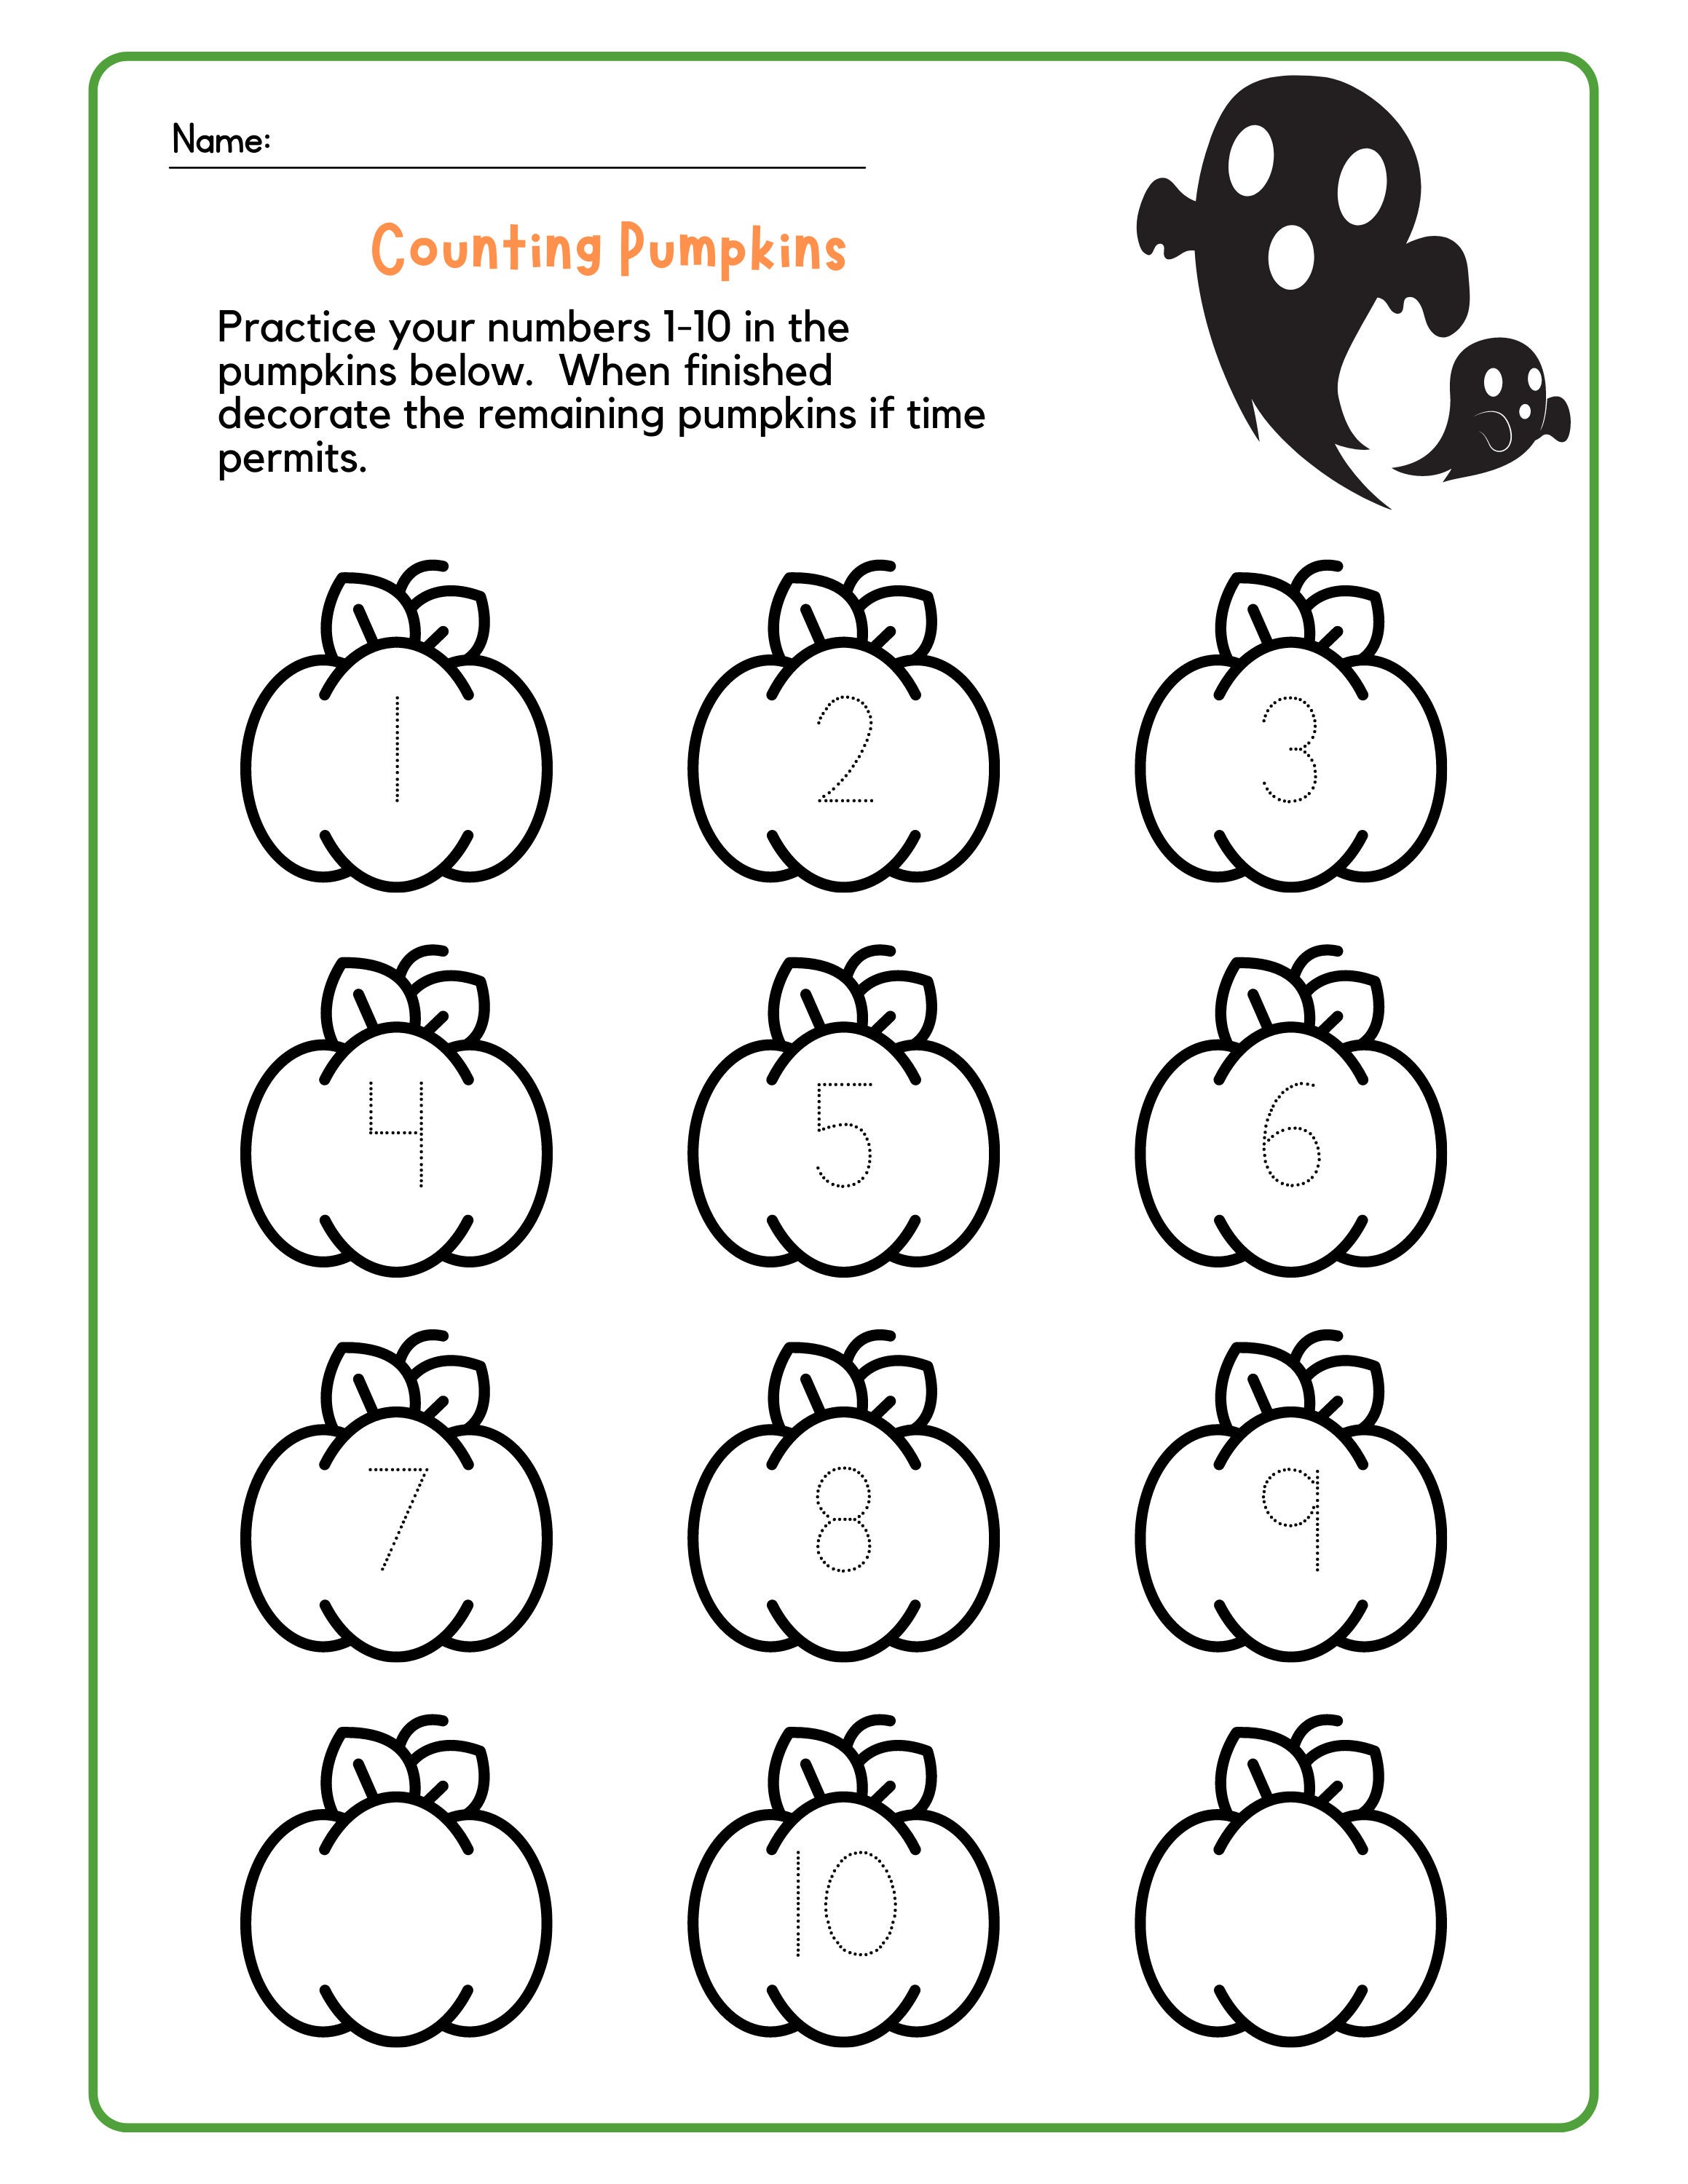 Halloween Tracing Worksheets For Preschool, PreK and Kindergarten –  Preschool Packets